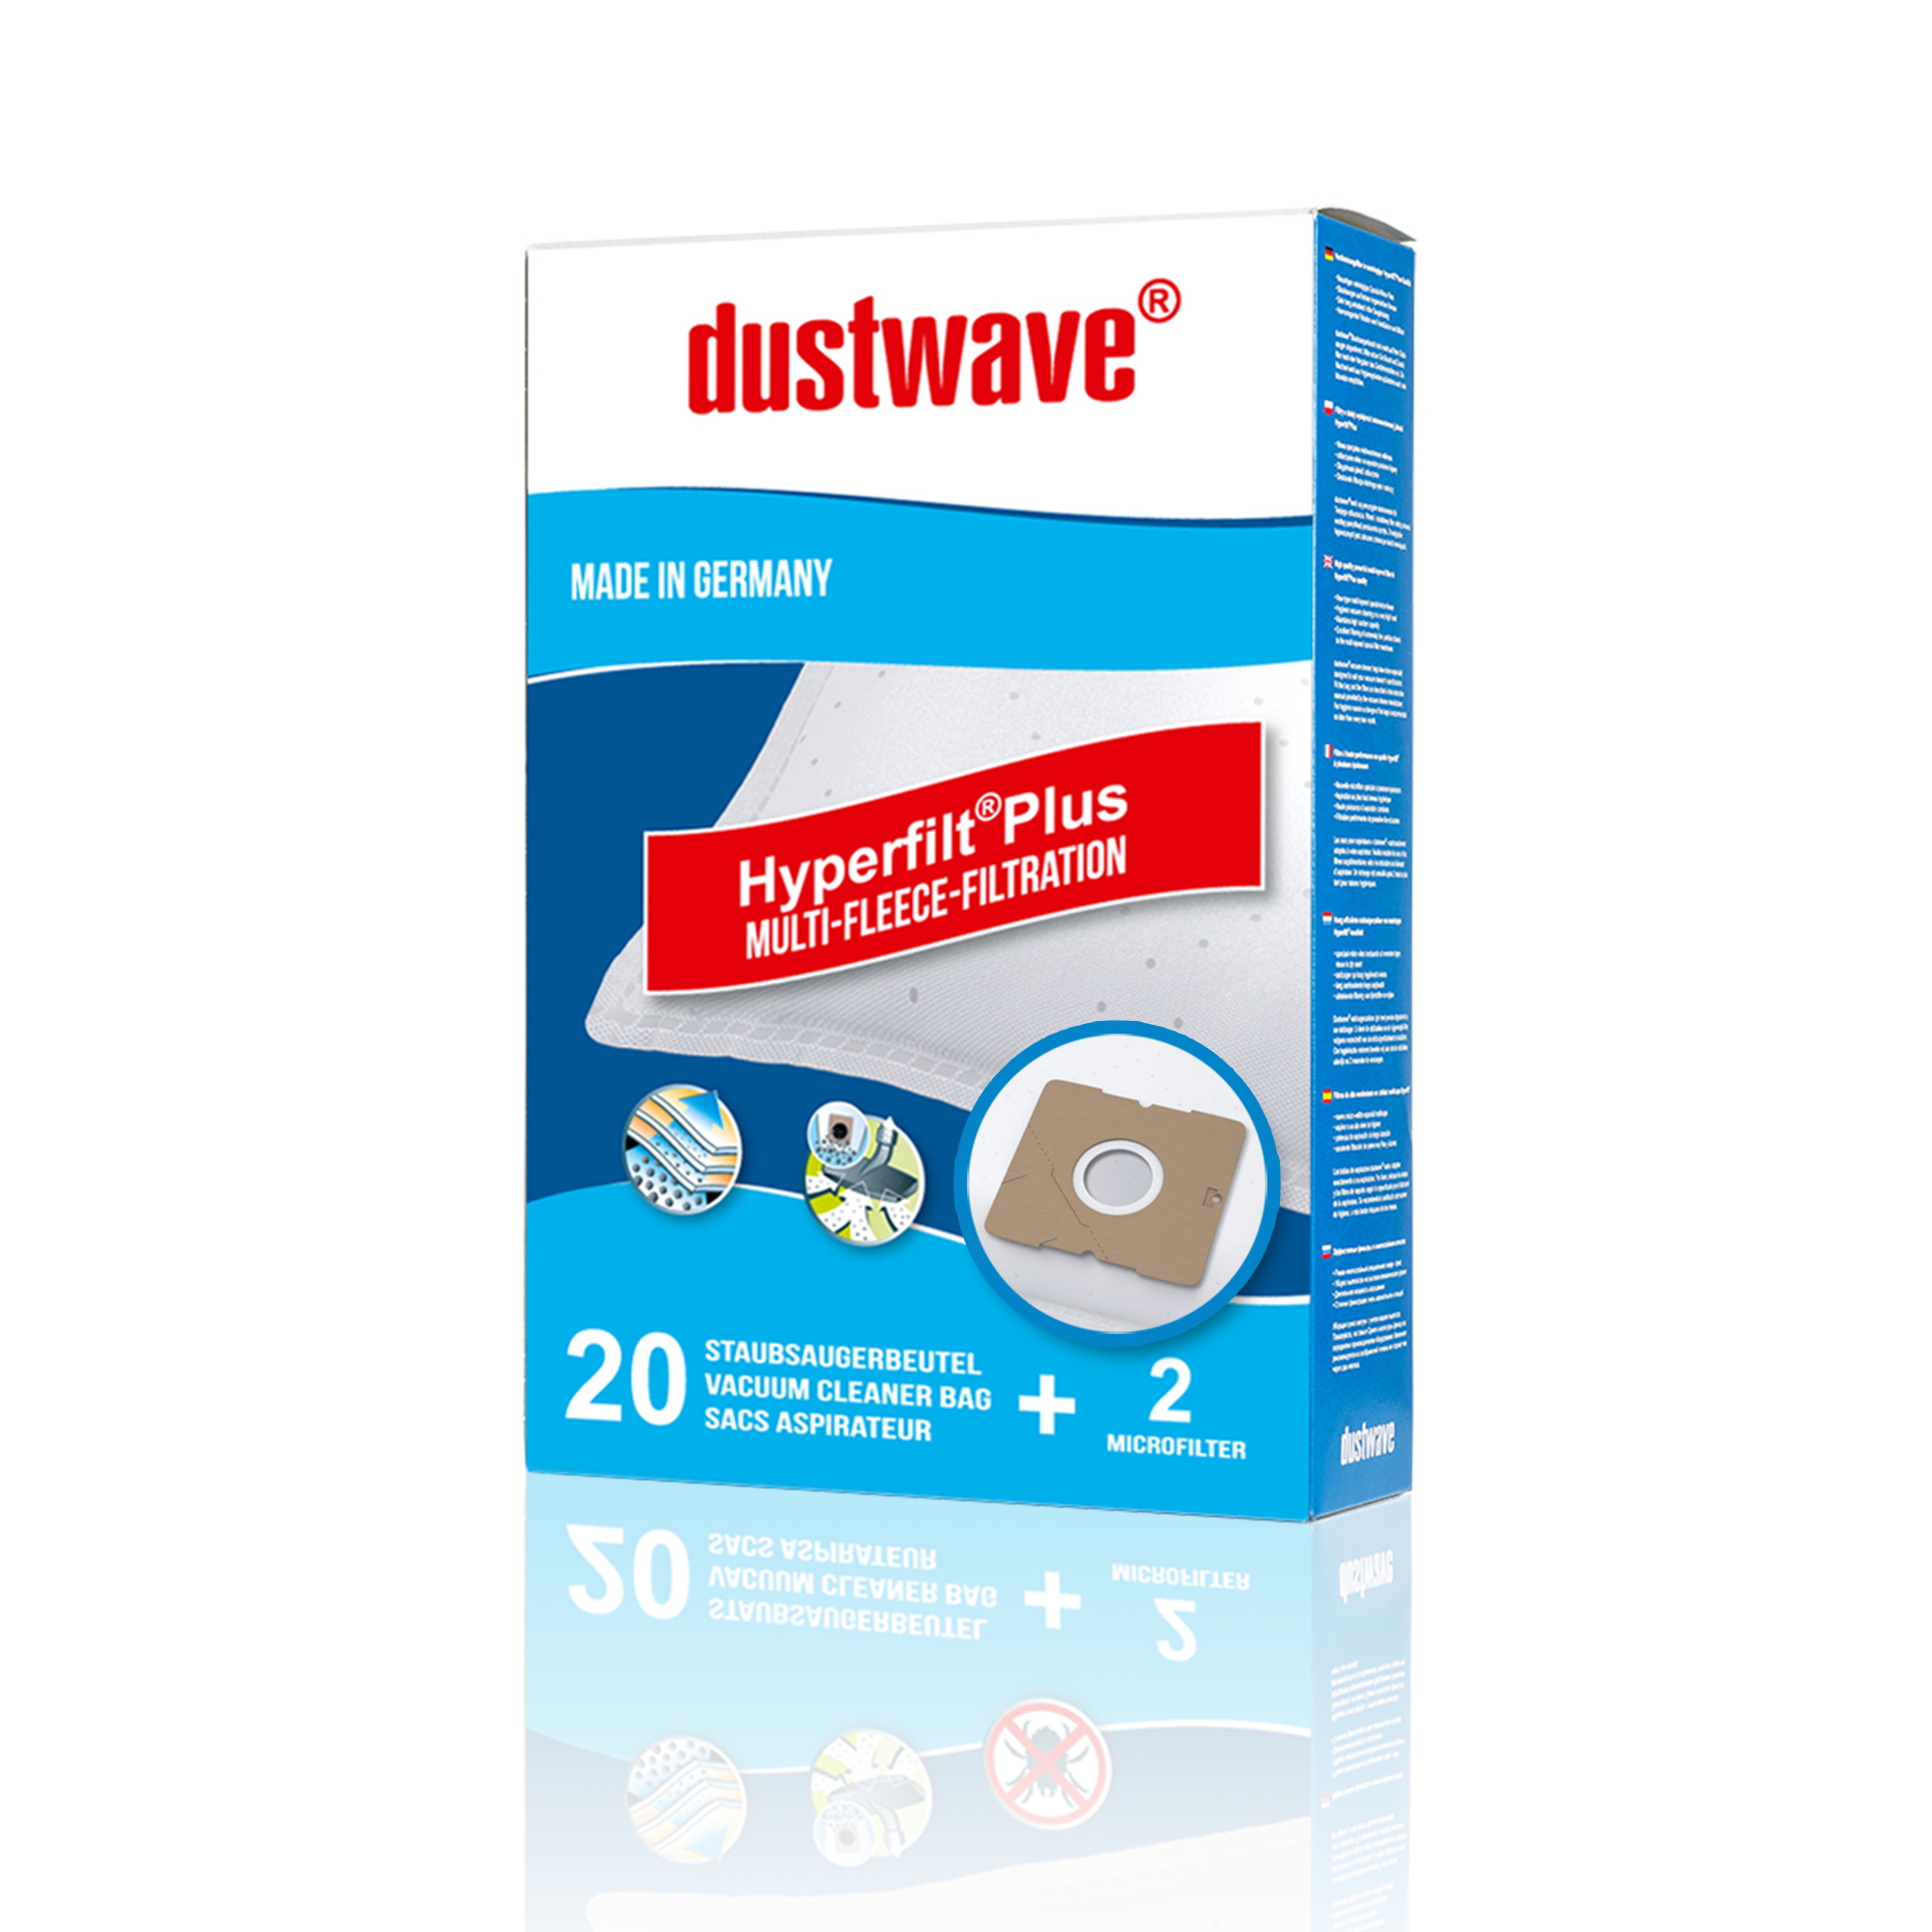 Dustwave® Premium 20 Staubsaugerbeutel für AEG Smart 360 - hocheffizient mit Hygieneverschluss - Made in Germany